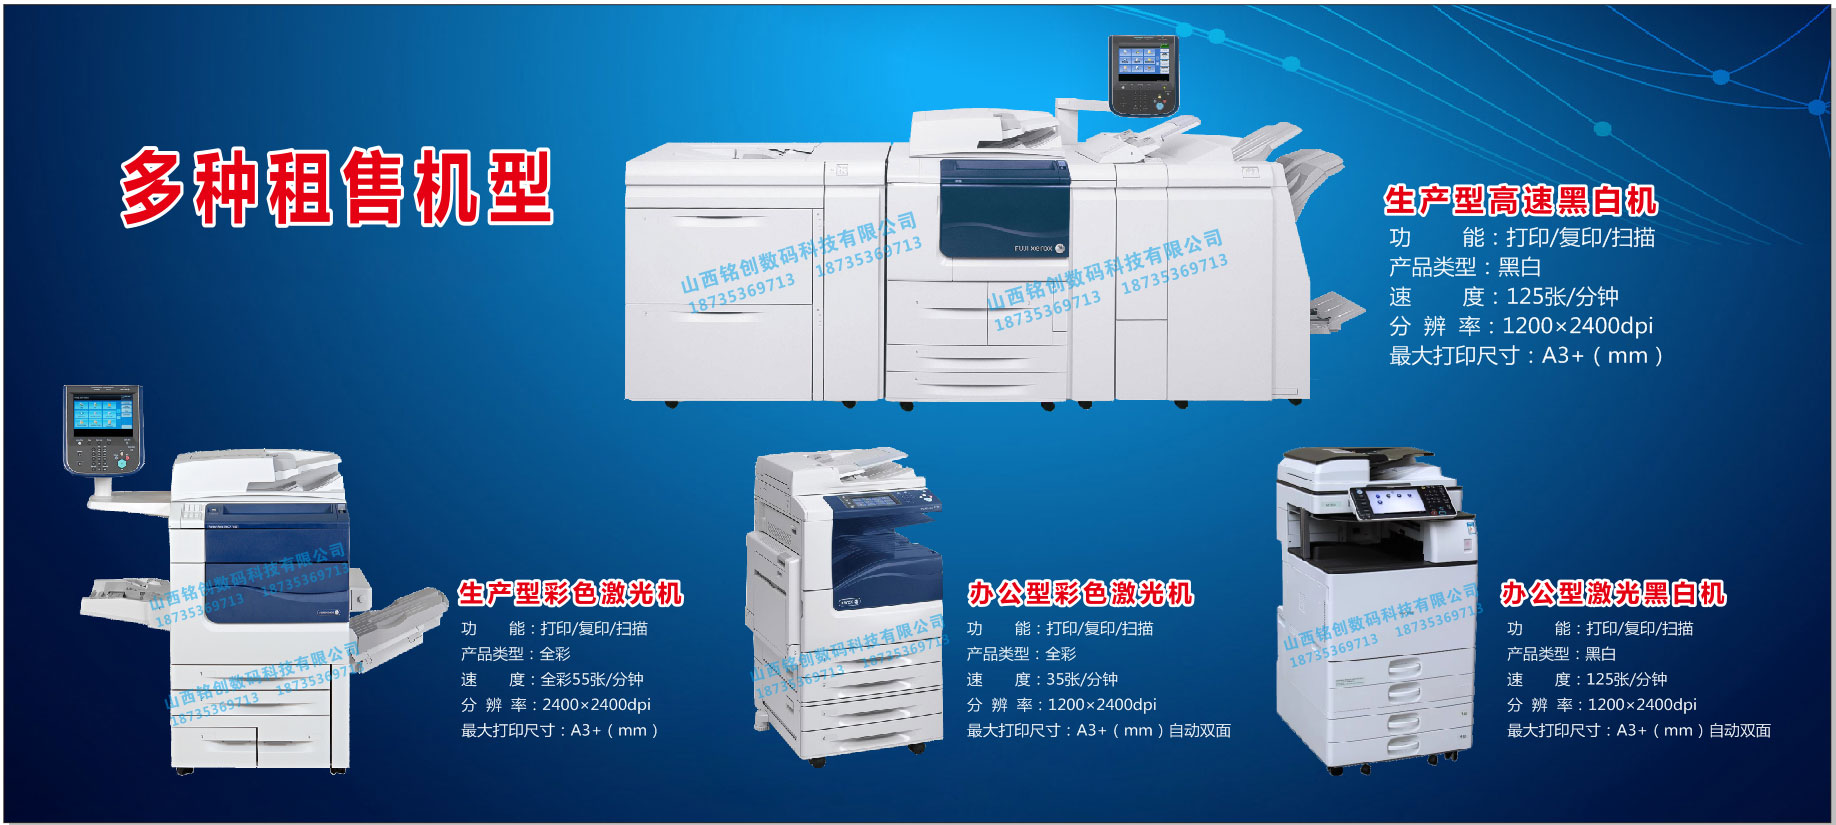 太原复印机打广州打印机维修热线，，广州打印机维修热线
印机租赁公司